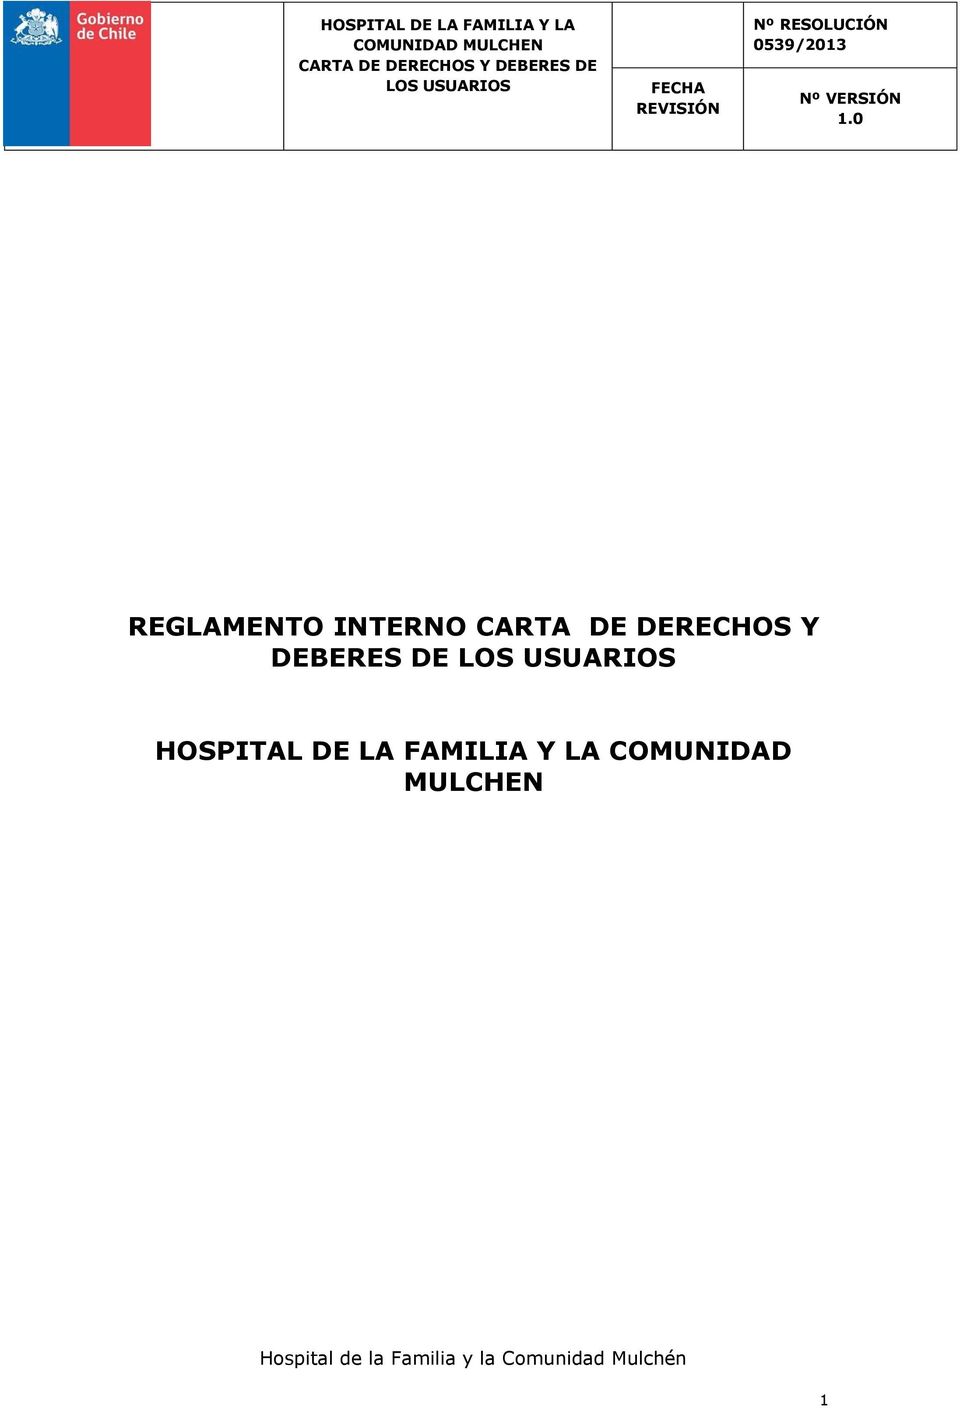 HOSPITAL DE LA FAMILIA Y